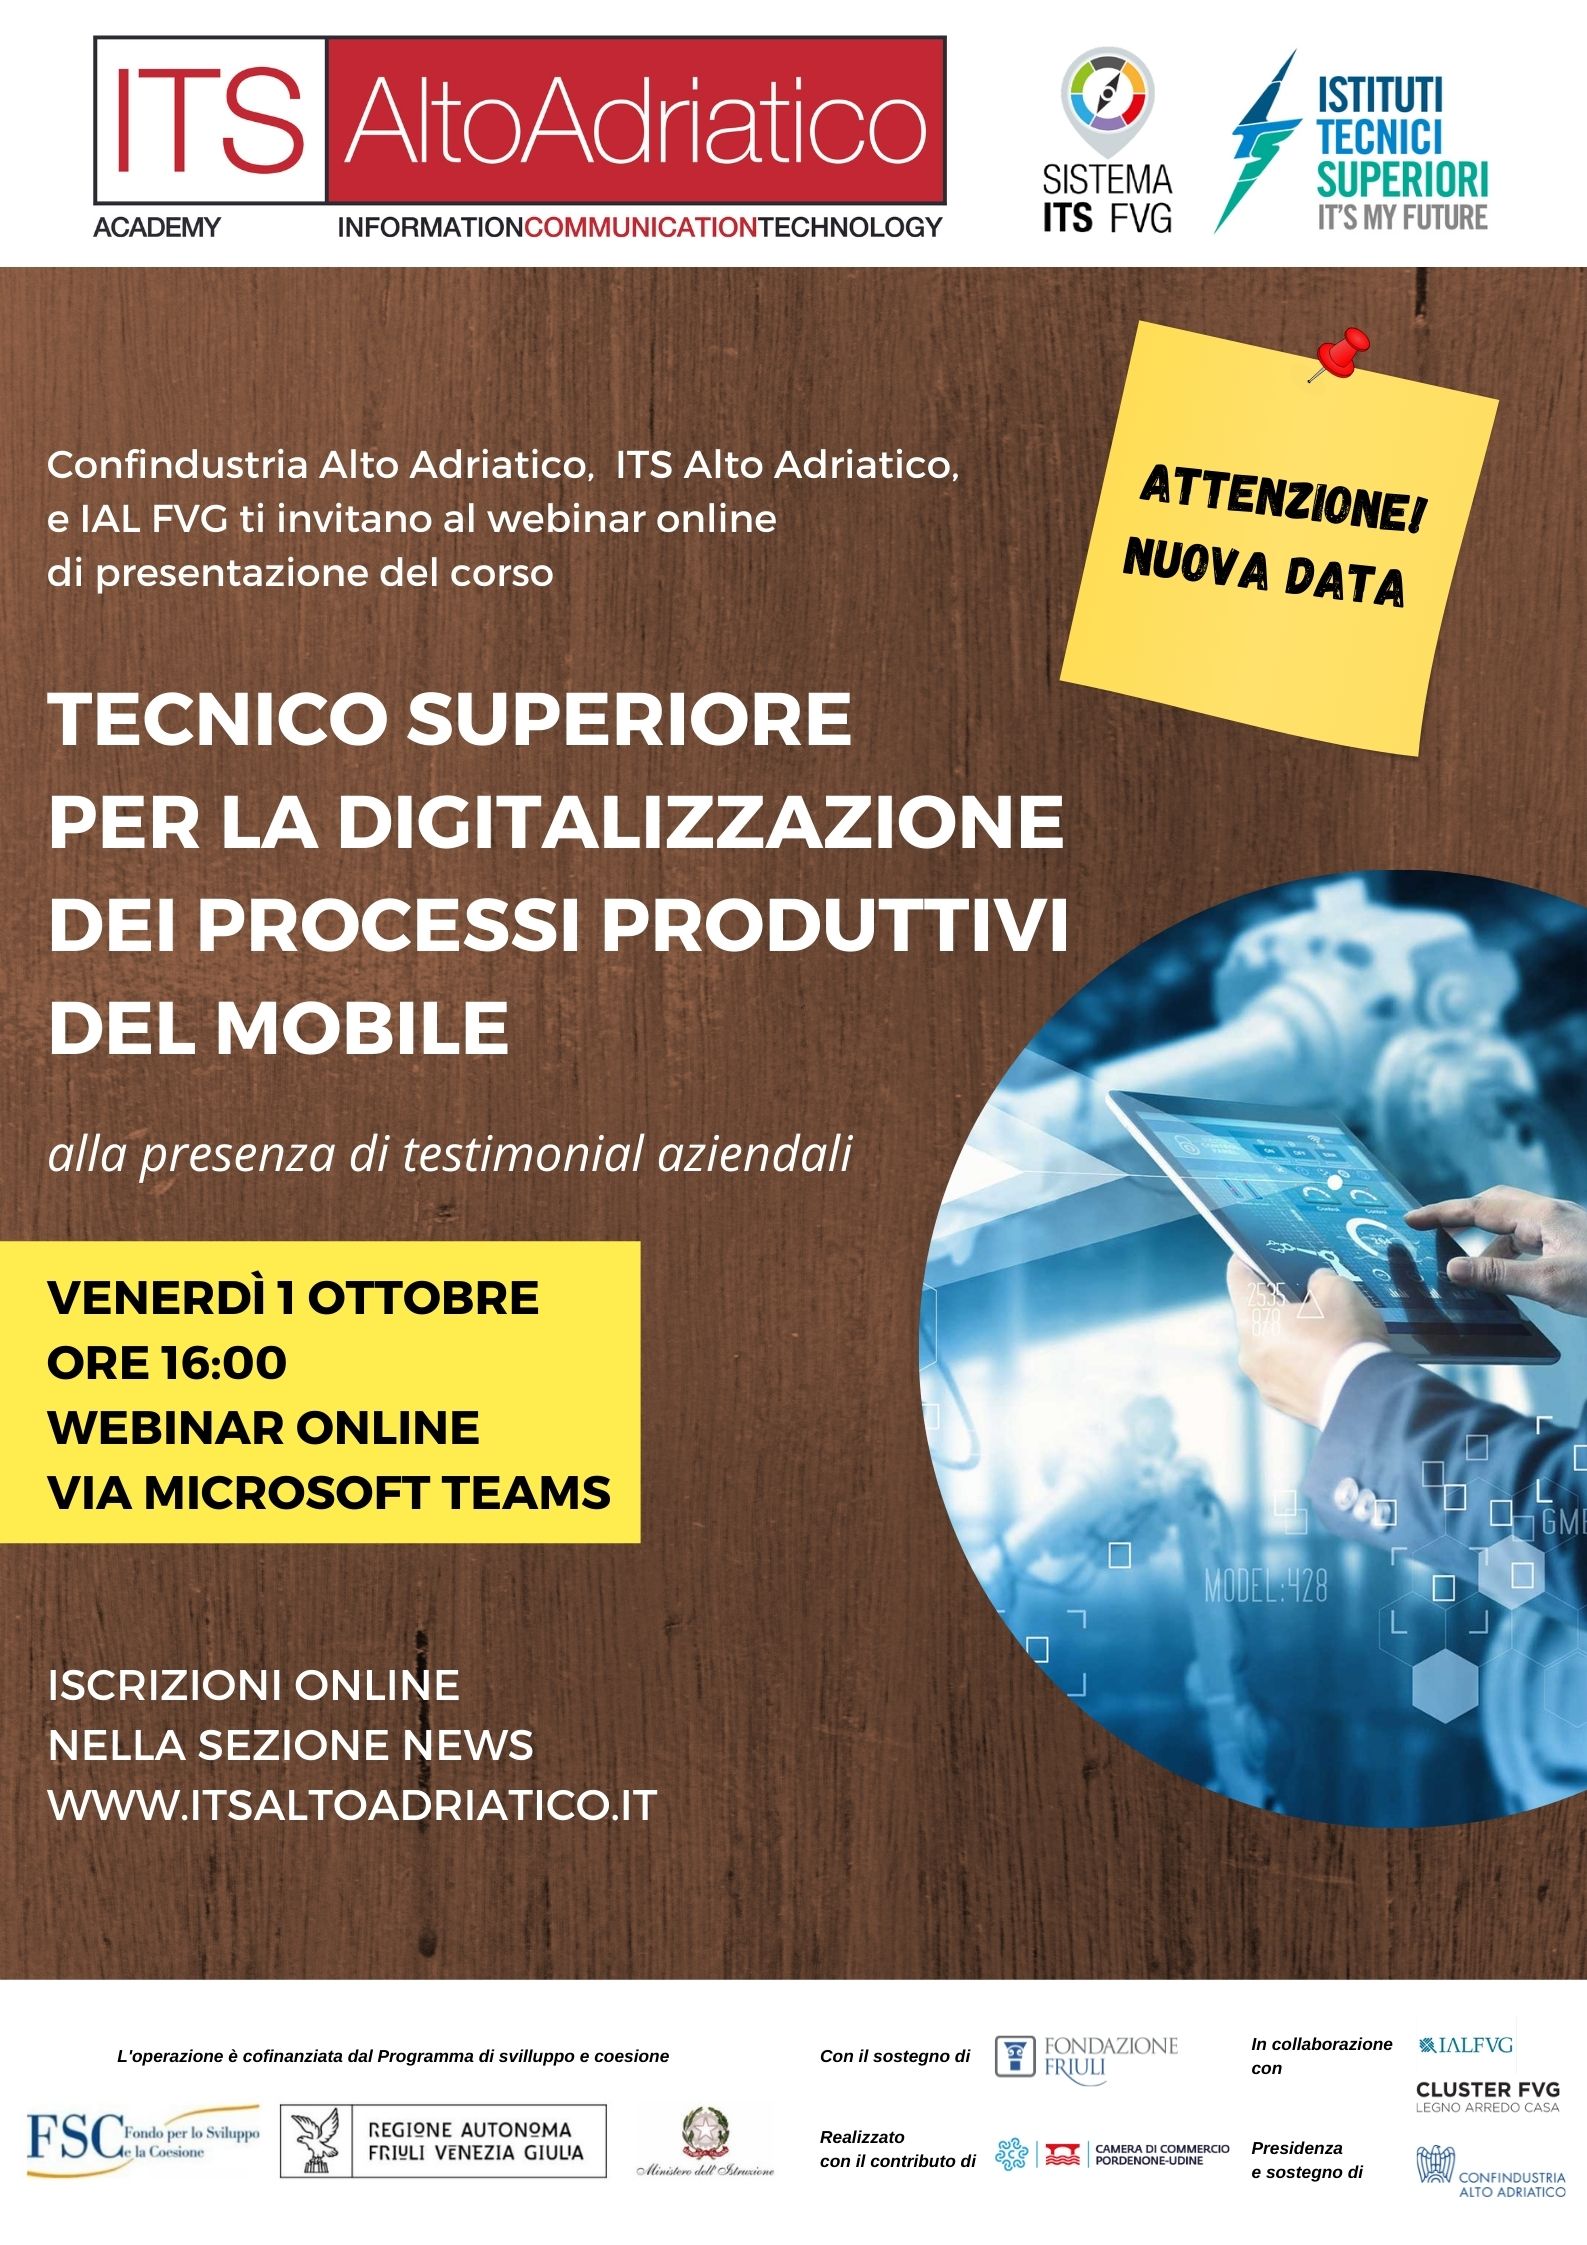 Rinviato a venerdì 1 ottobre ore 16:00 il nuovo incontro di presentazione del 1° corso ITS in Italia dedicato all’ambito ICT nei processi produttivi del settore mobile